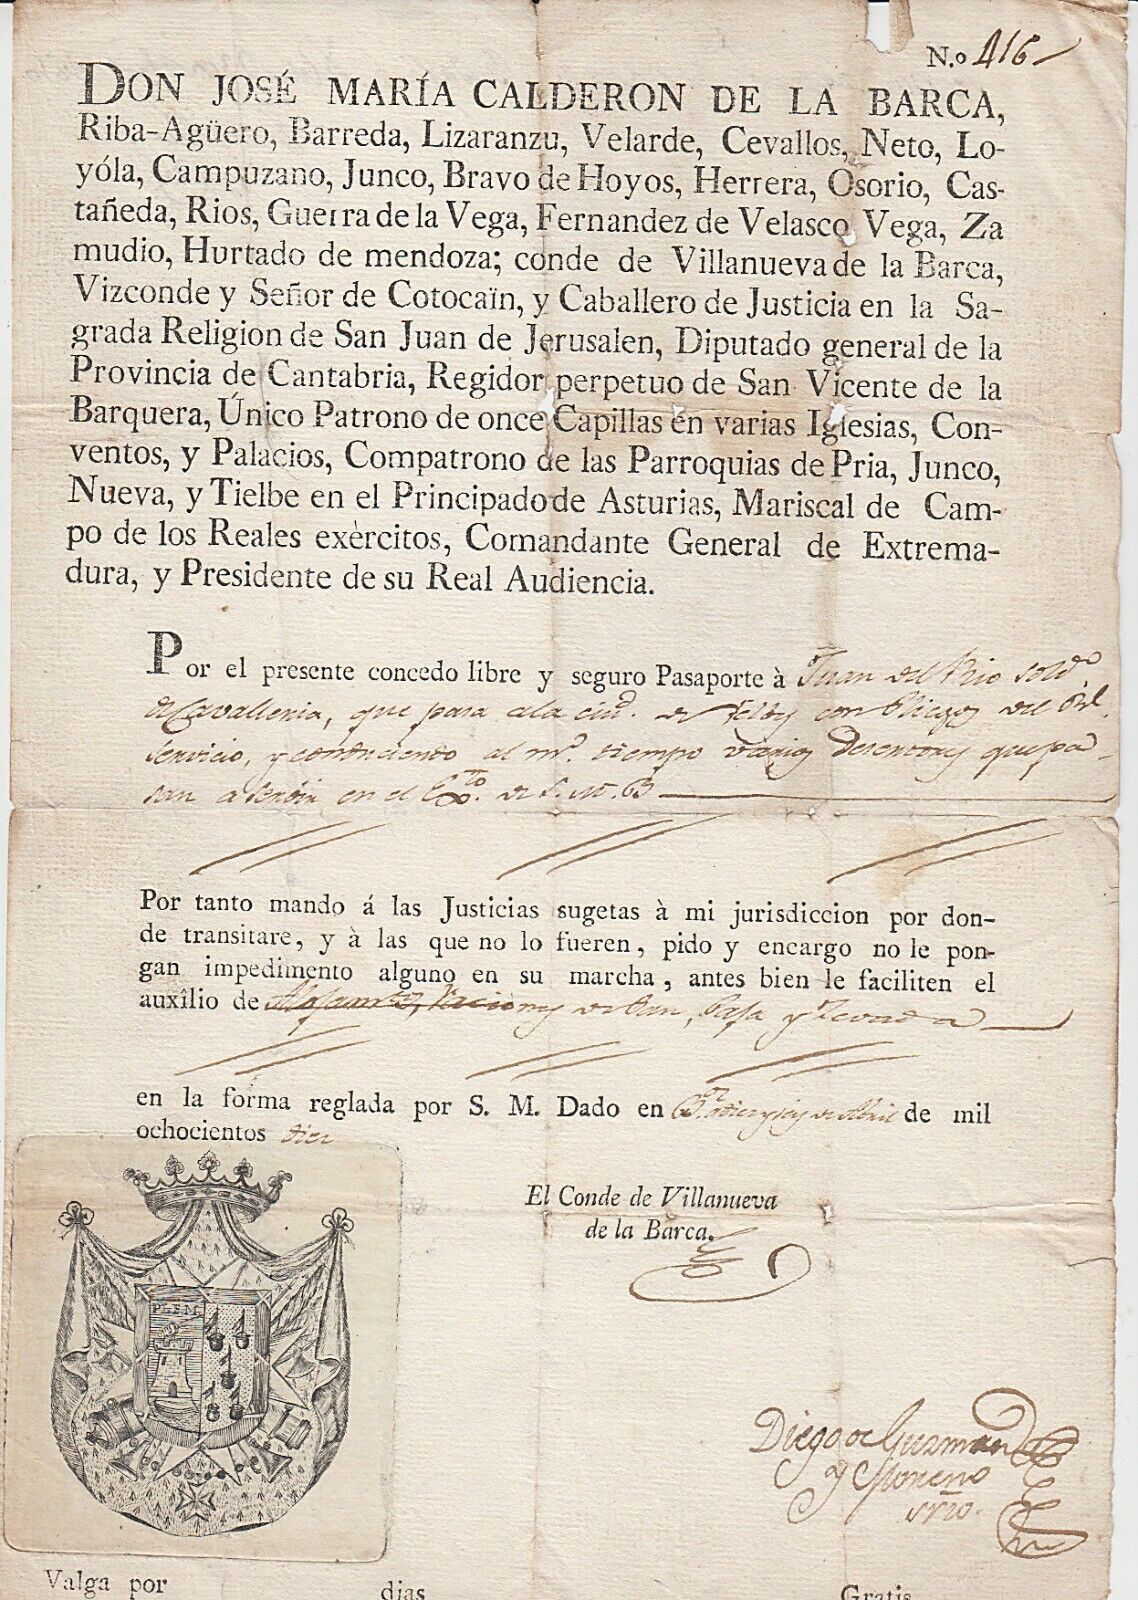 SPAIN. Peninsular War Passport, 1810.